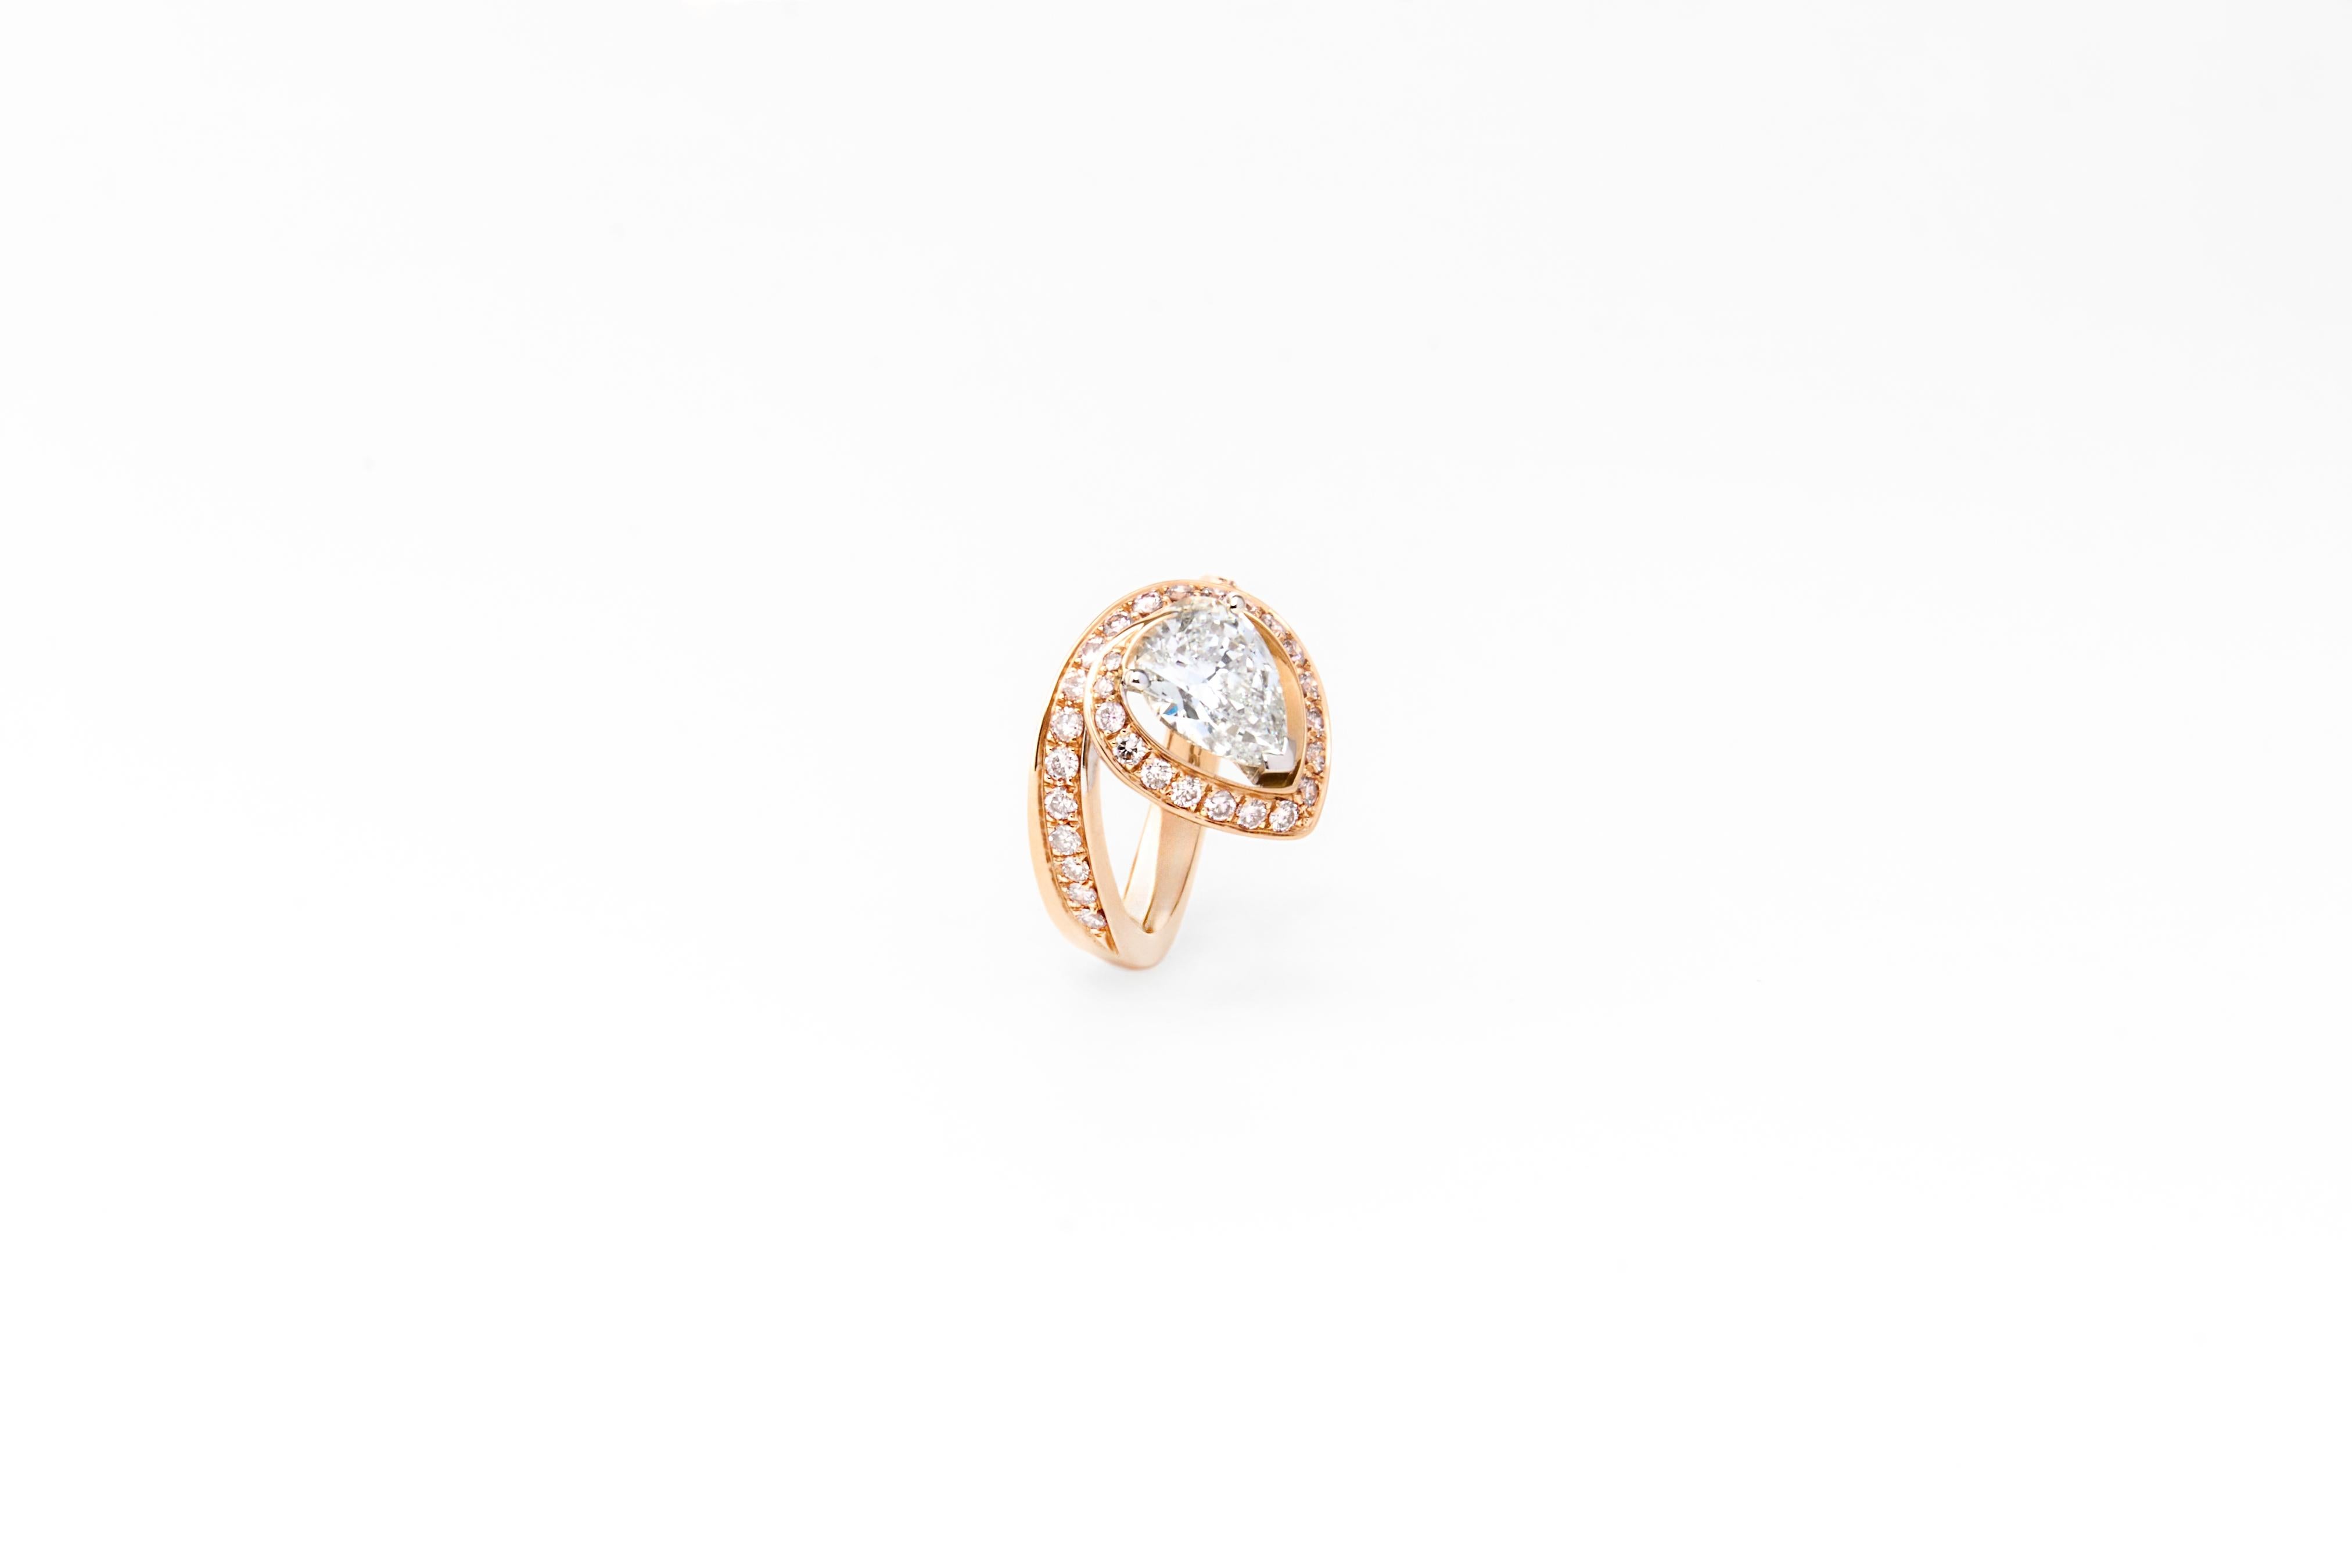 Dieser Ring, ein faszinierendes Stück italienischer Handwerkskunst, wurde vom Meisterjuwelier SCAVIA entworfen und ist ein Zeugnis für die Spitzenklasse der italienischen Juwelierkunst. Ein Band aus erlesenen rosafarbenen Diamanten windet sich